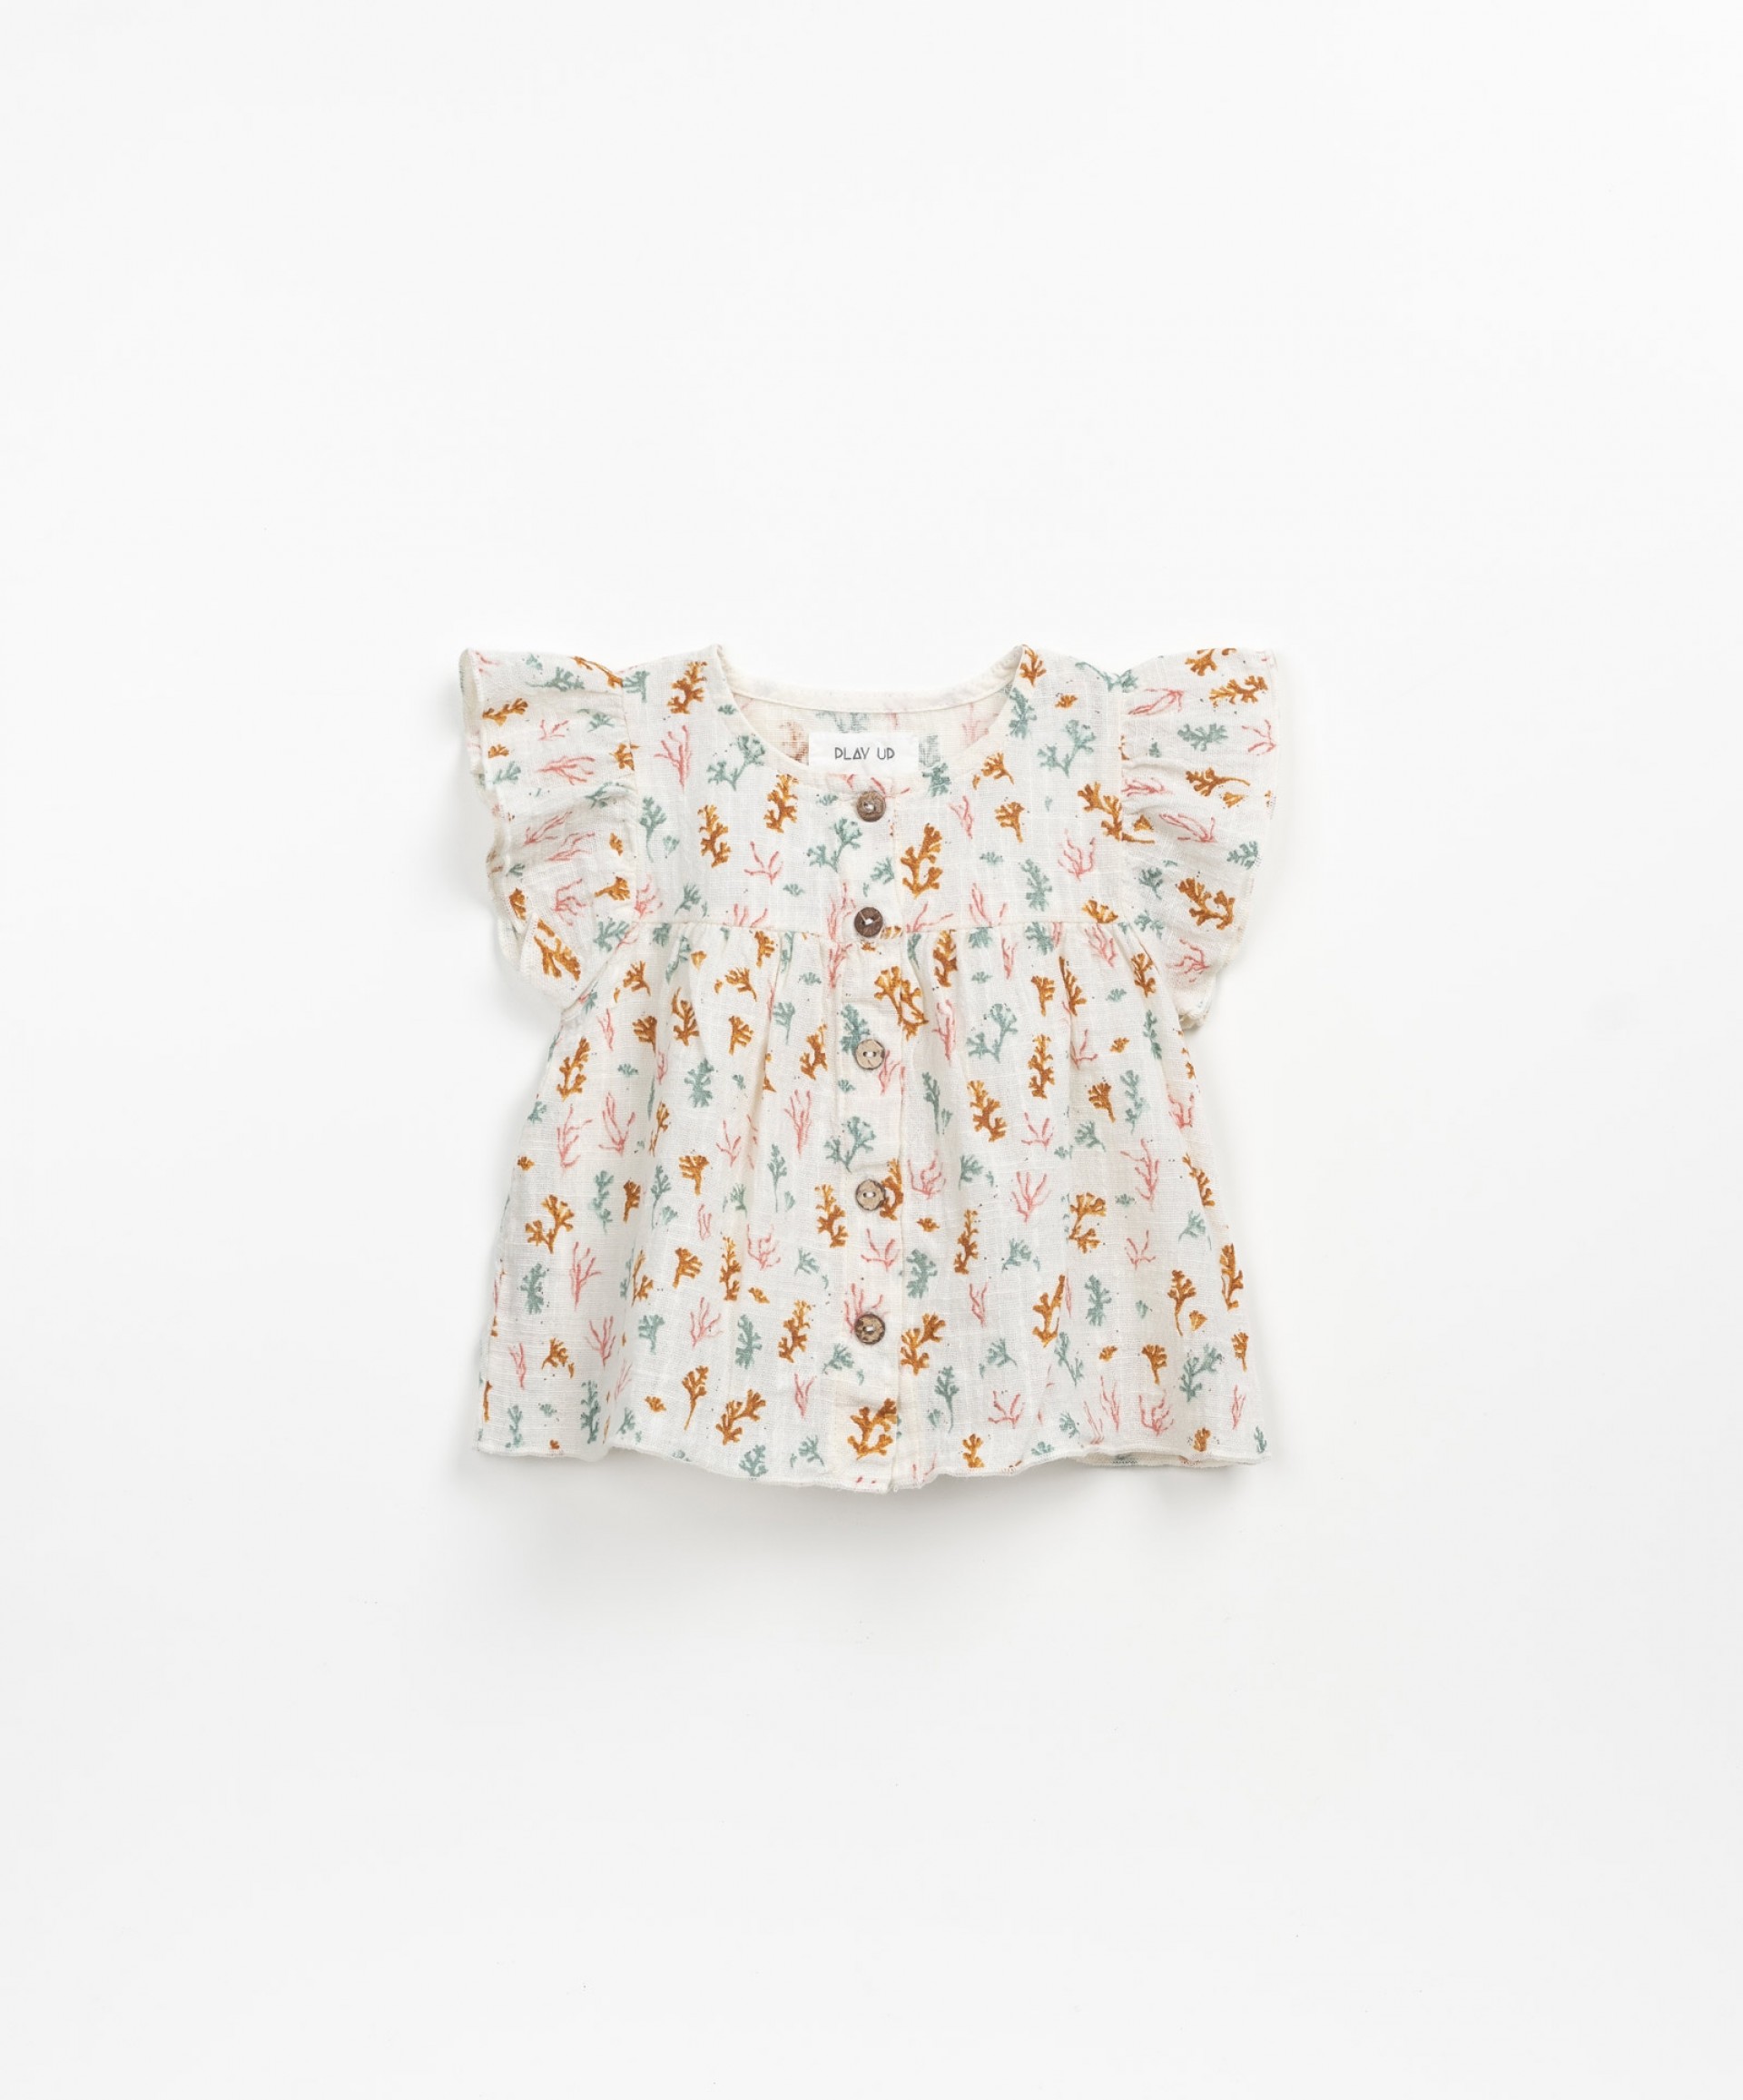 Tunique en tissu avec boutons en coco | Textile Art